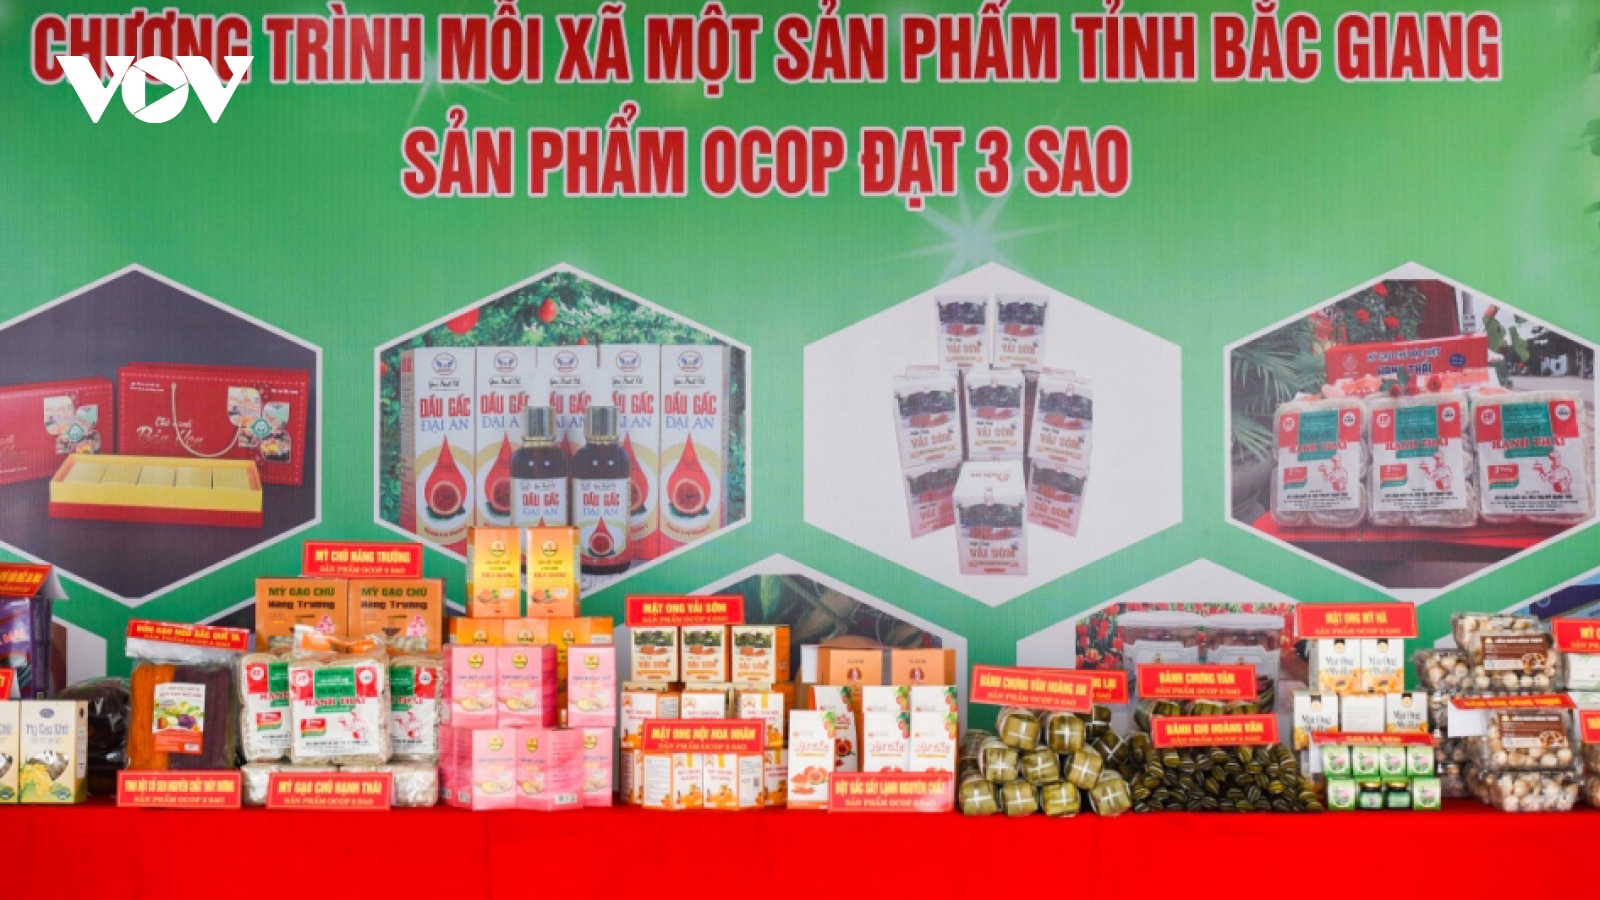 Bắc Giang tăng cường liên kết để nâng cao chất lượng sản phẩm OCOP